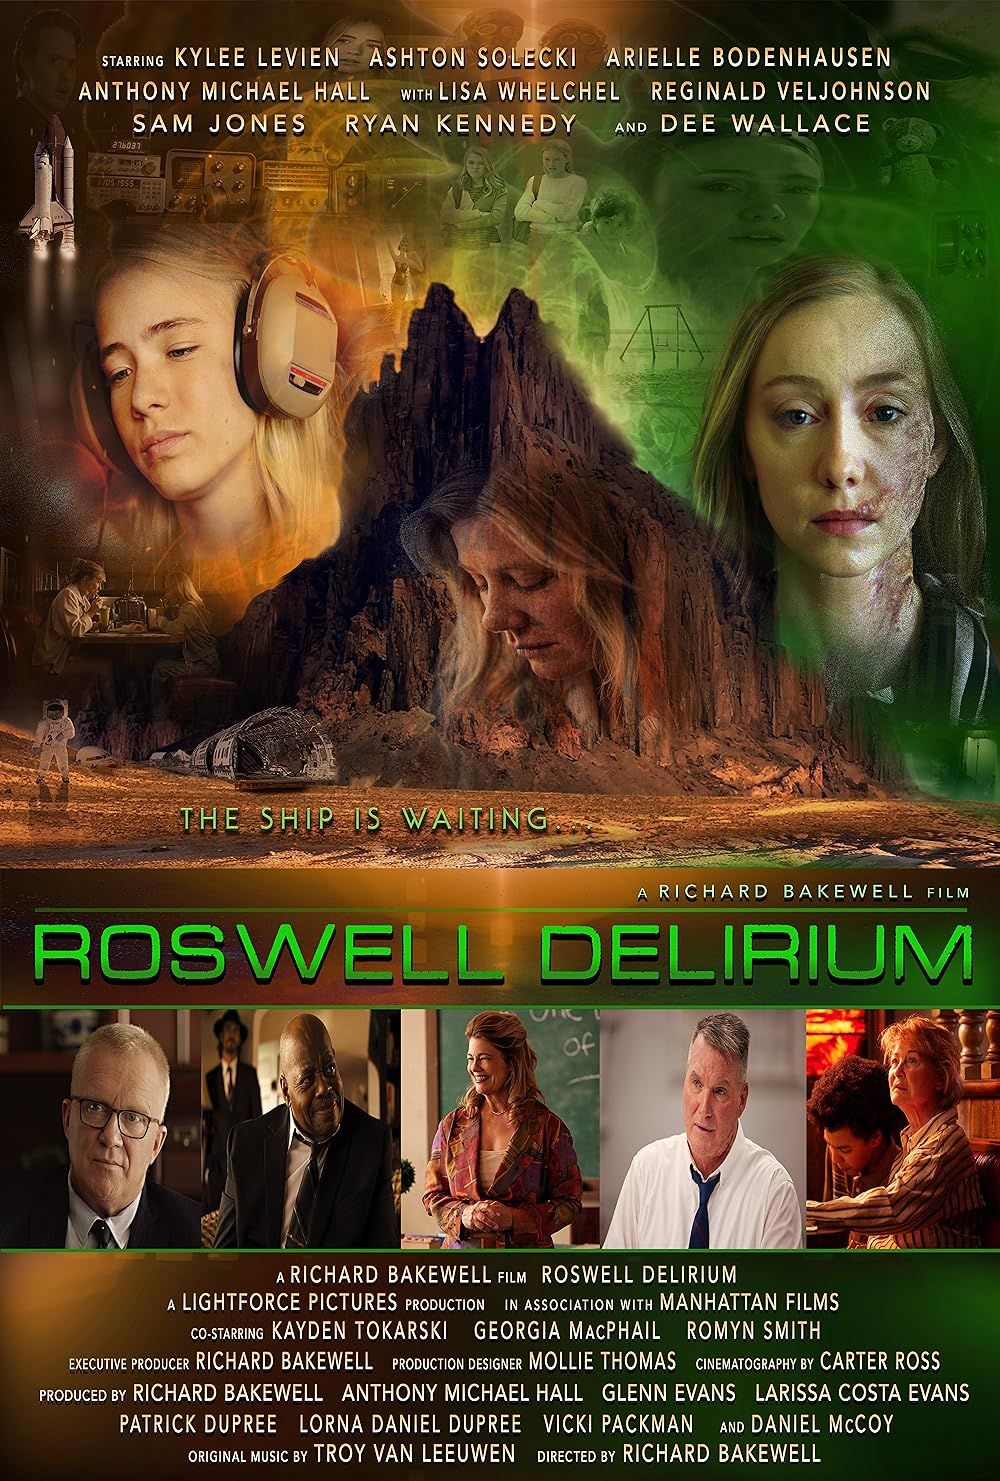 Roswell Delirium